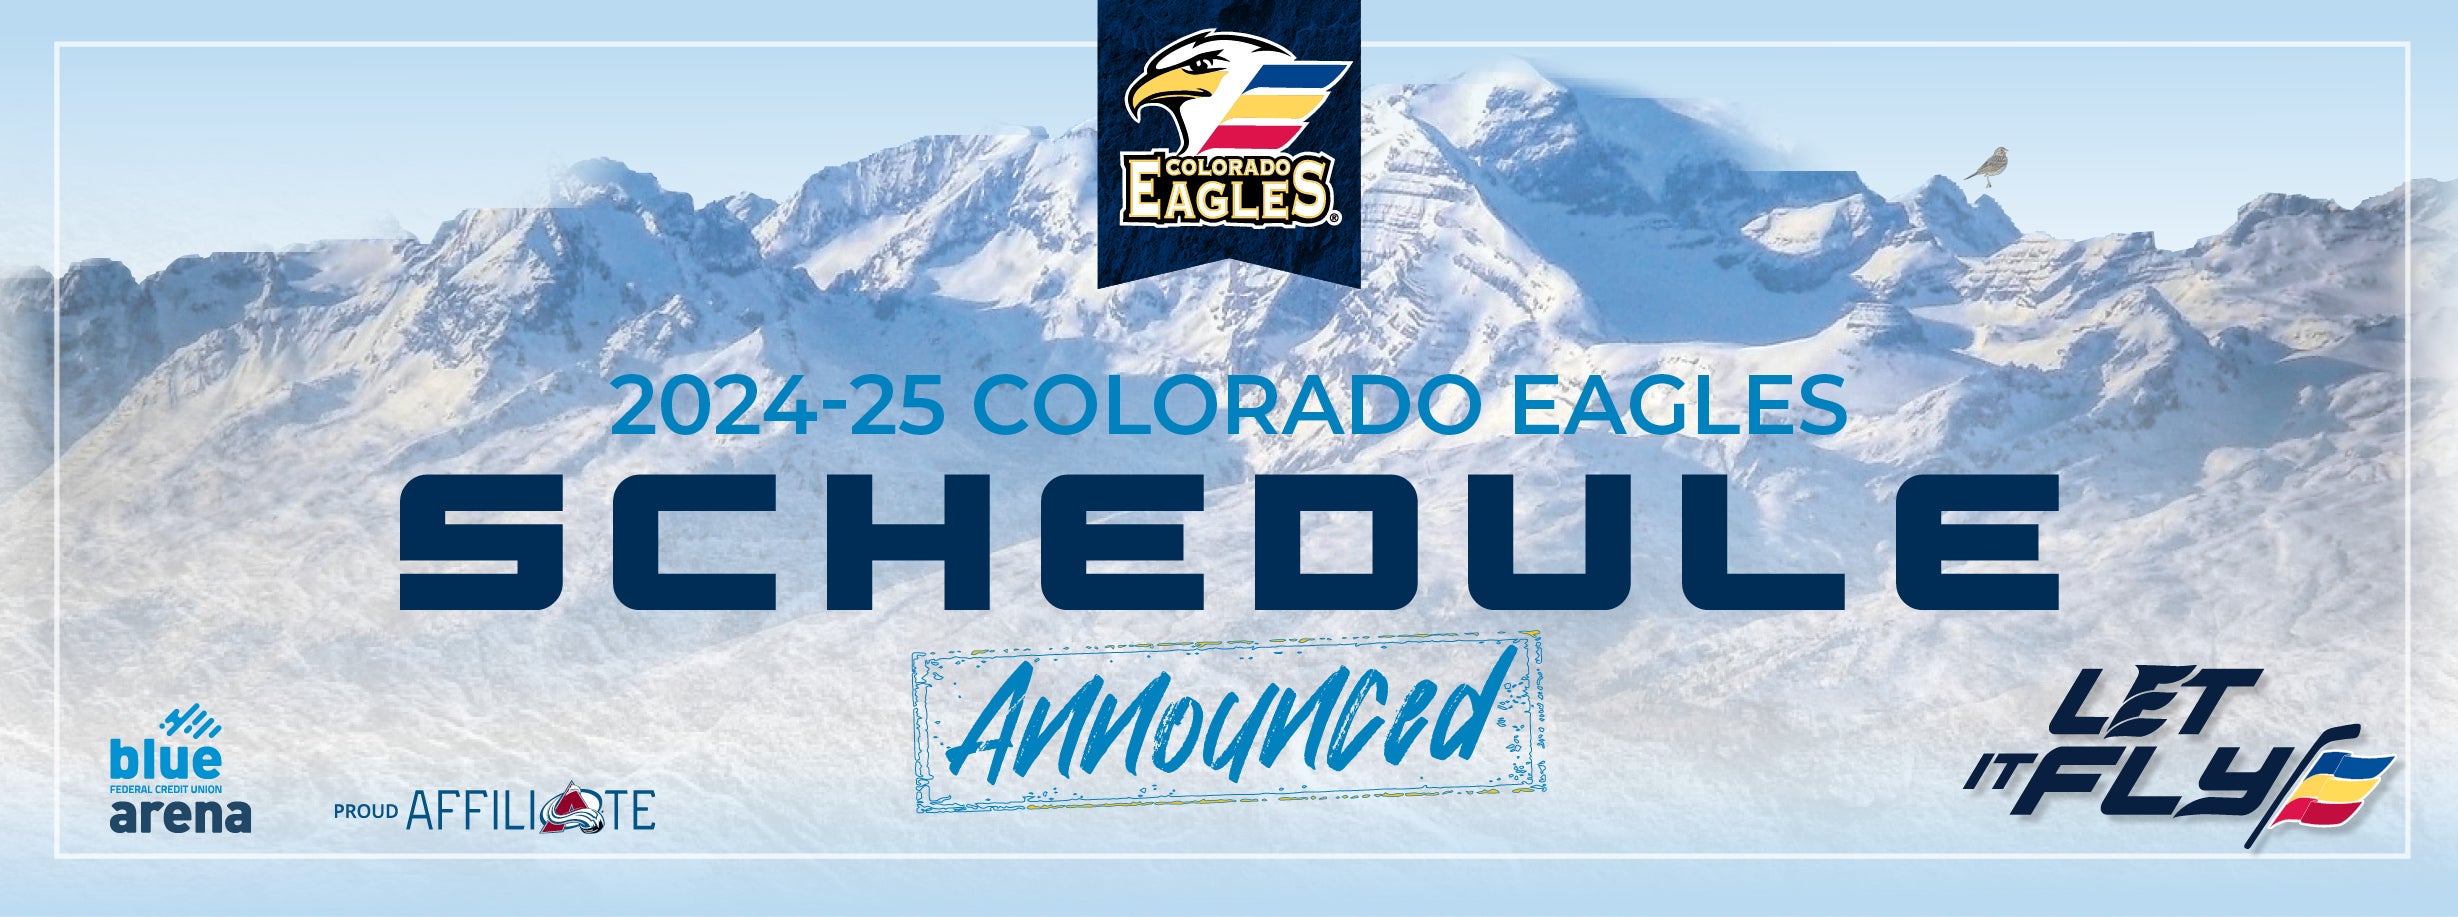 Colorado Eagles Announce 2024-25 Regular Season Schedule